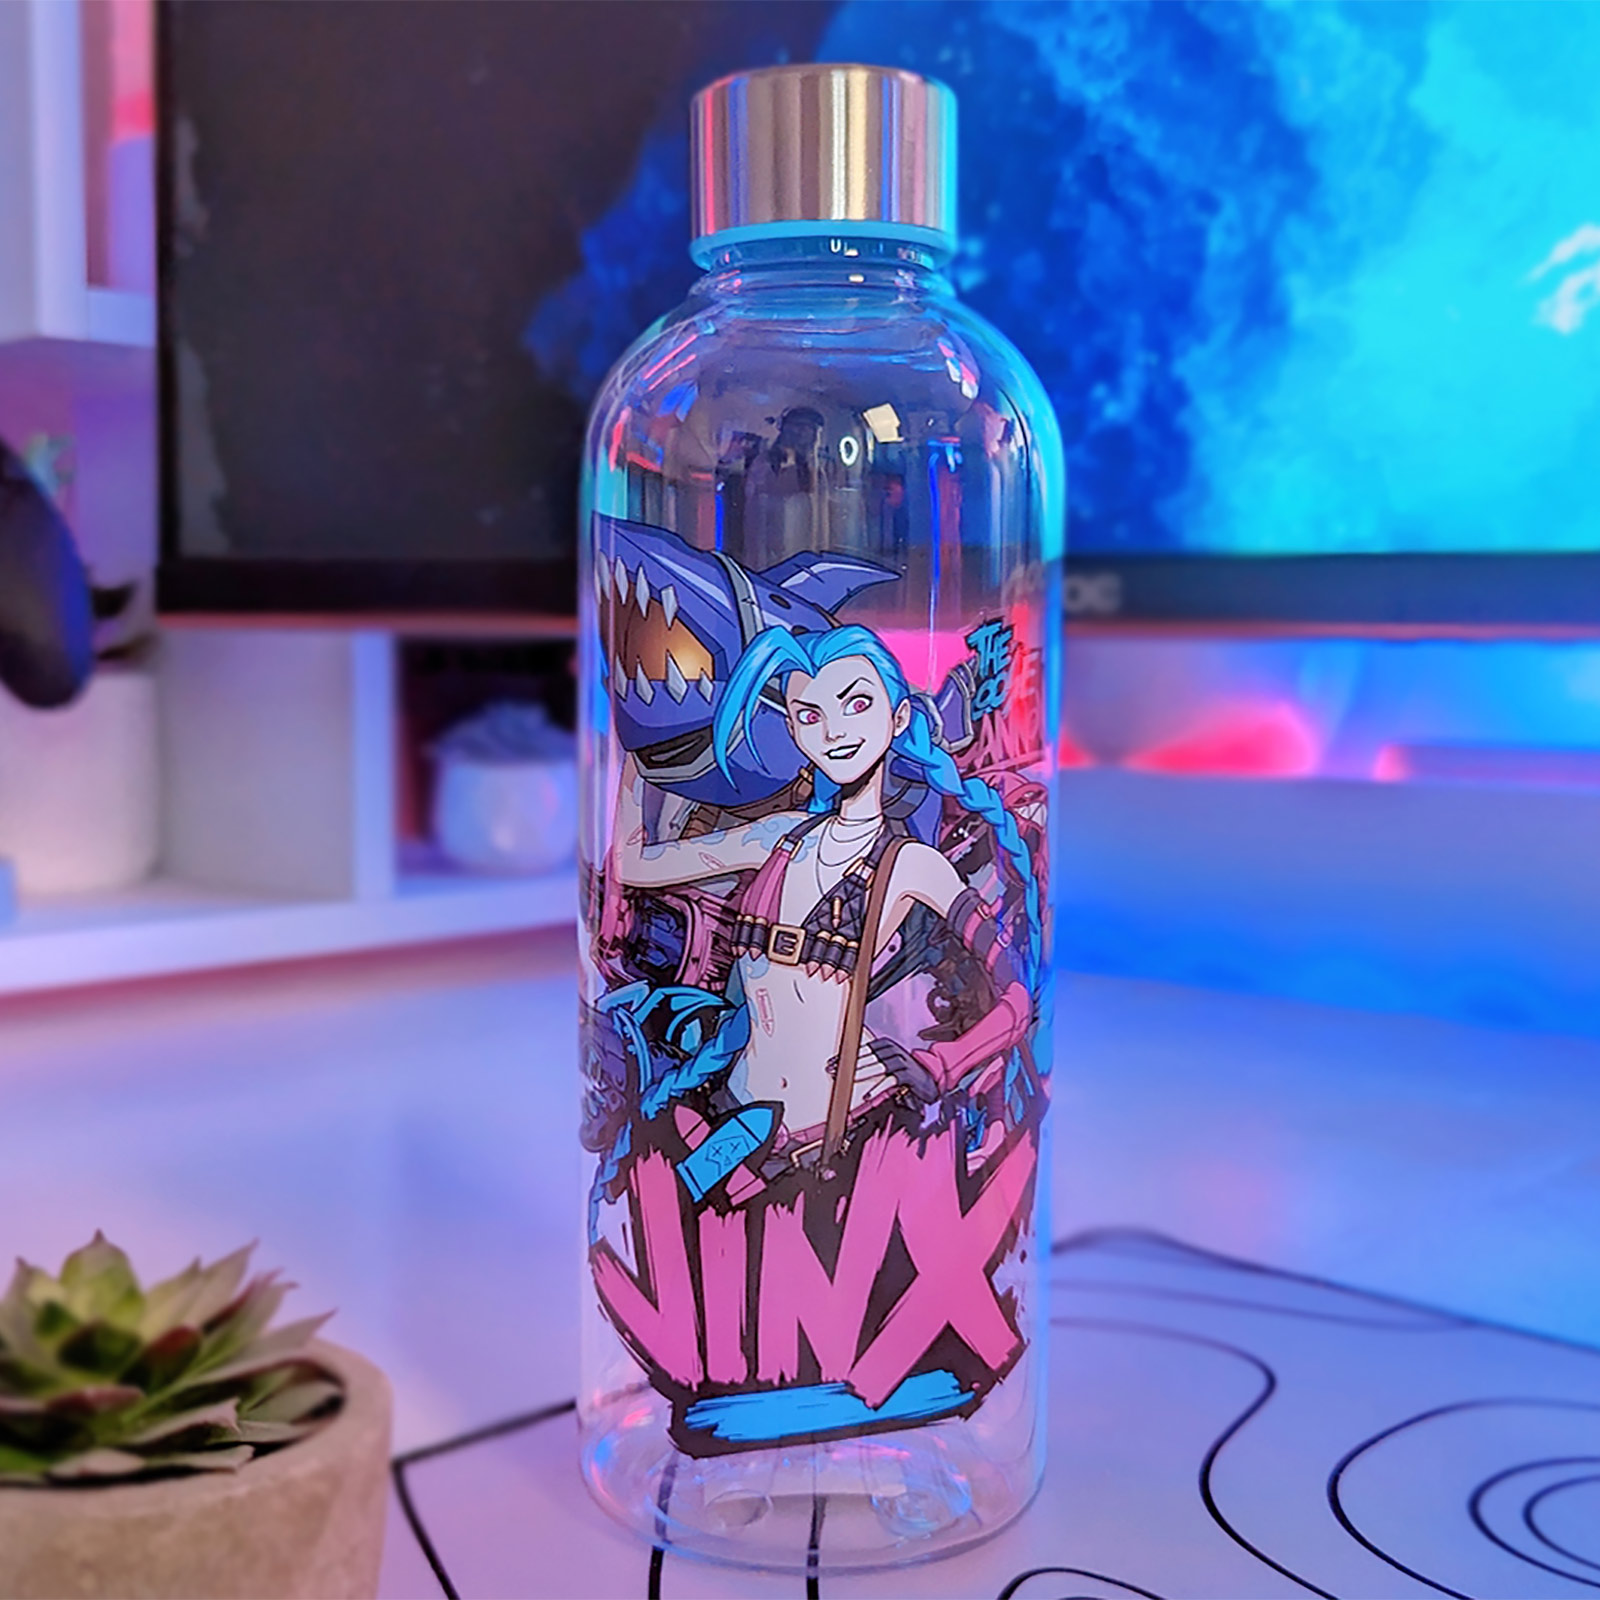 League of Legends - Jinx Drink Bottle